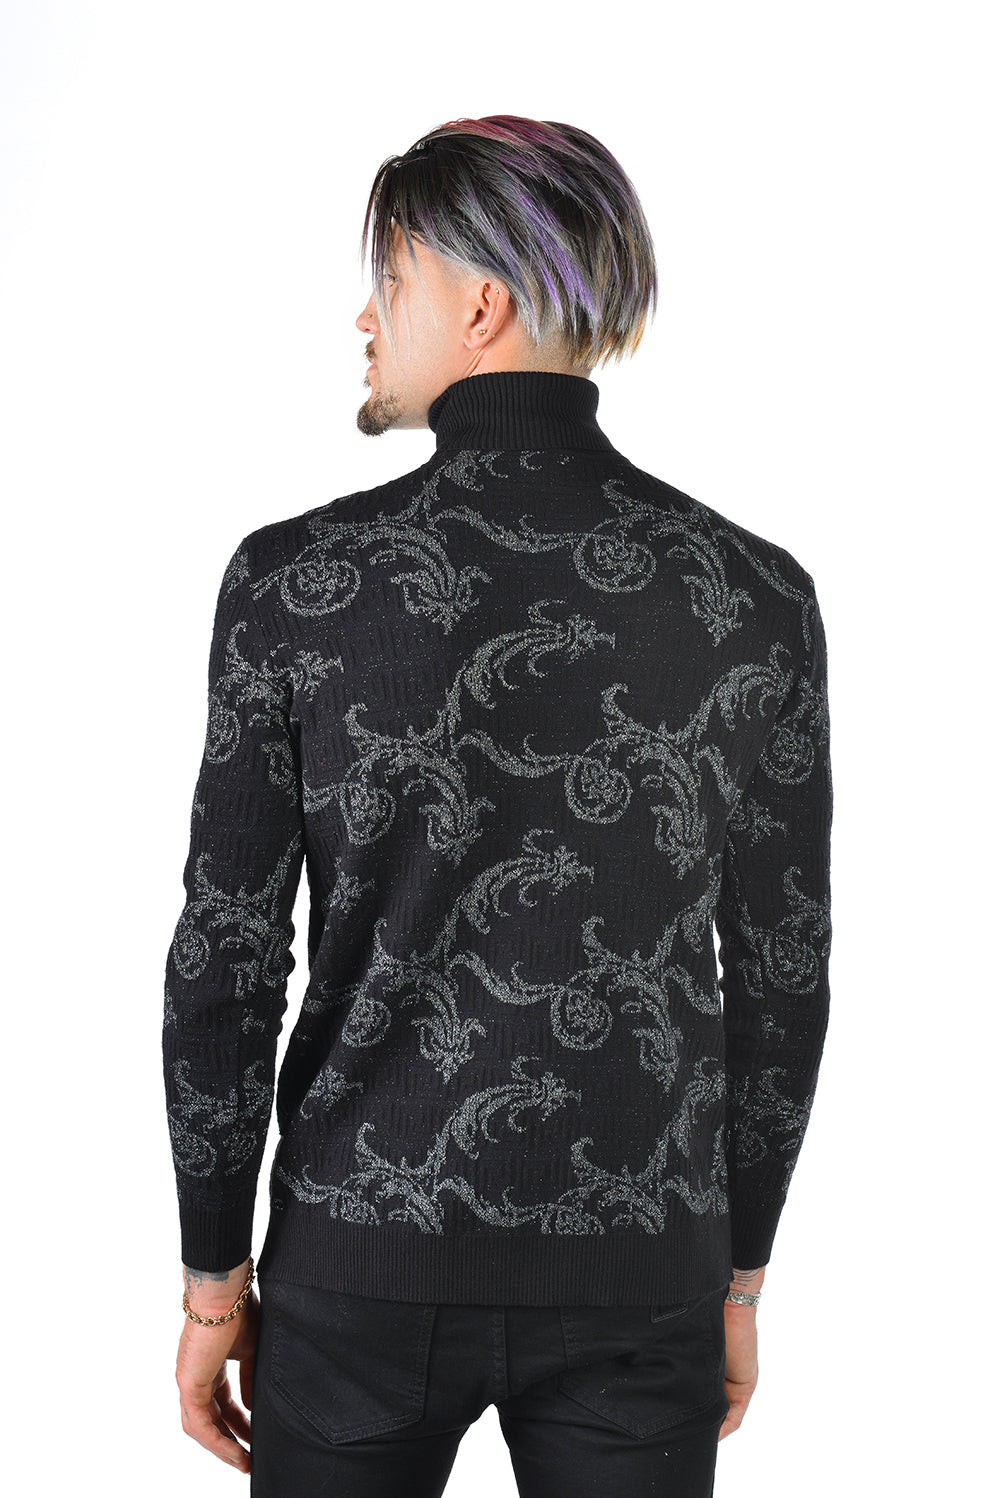 Barabas Men's Floral Print Design Long Sleeve Turtleneck Sweater 2LS2102 Black Silver